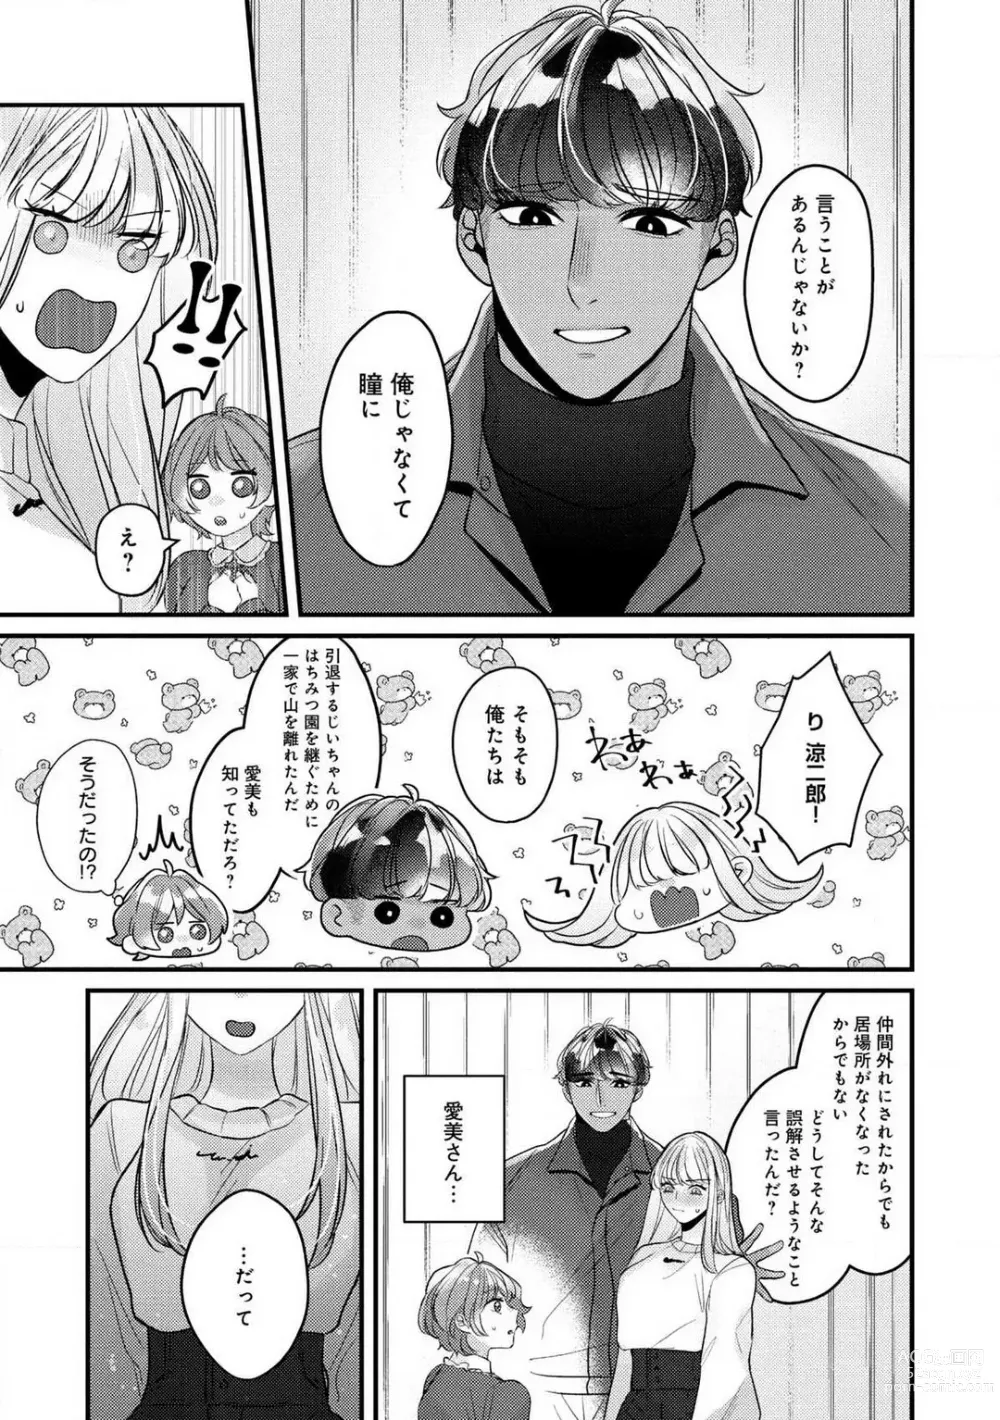 Page 166 of manga Dokusen Ai no Ato wa Ama ga Mi Dake Ja Tarinai 〜 Watashi wa Kuma-san no Gochisō 1-7